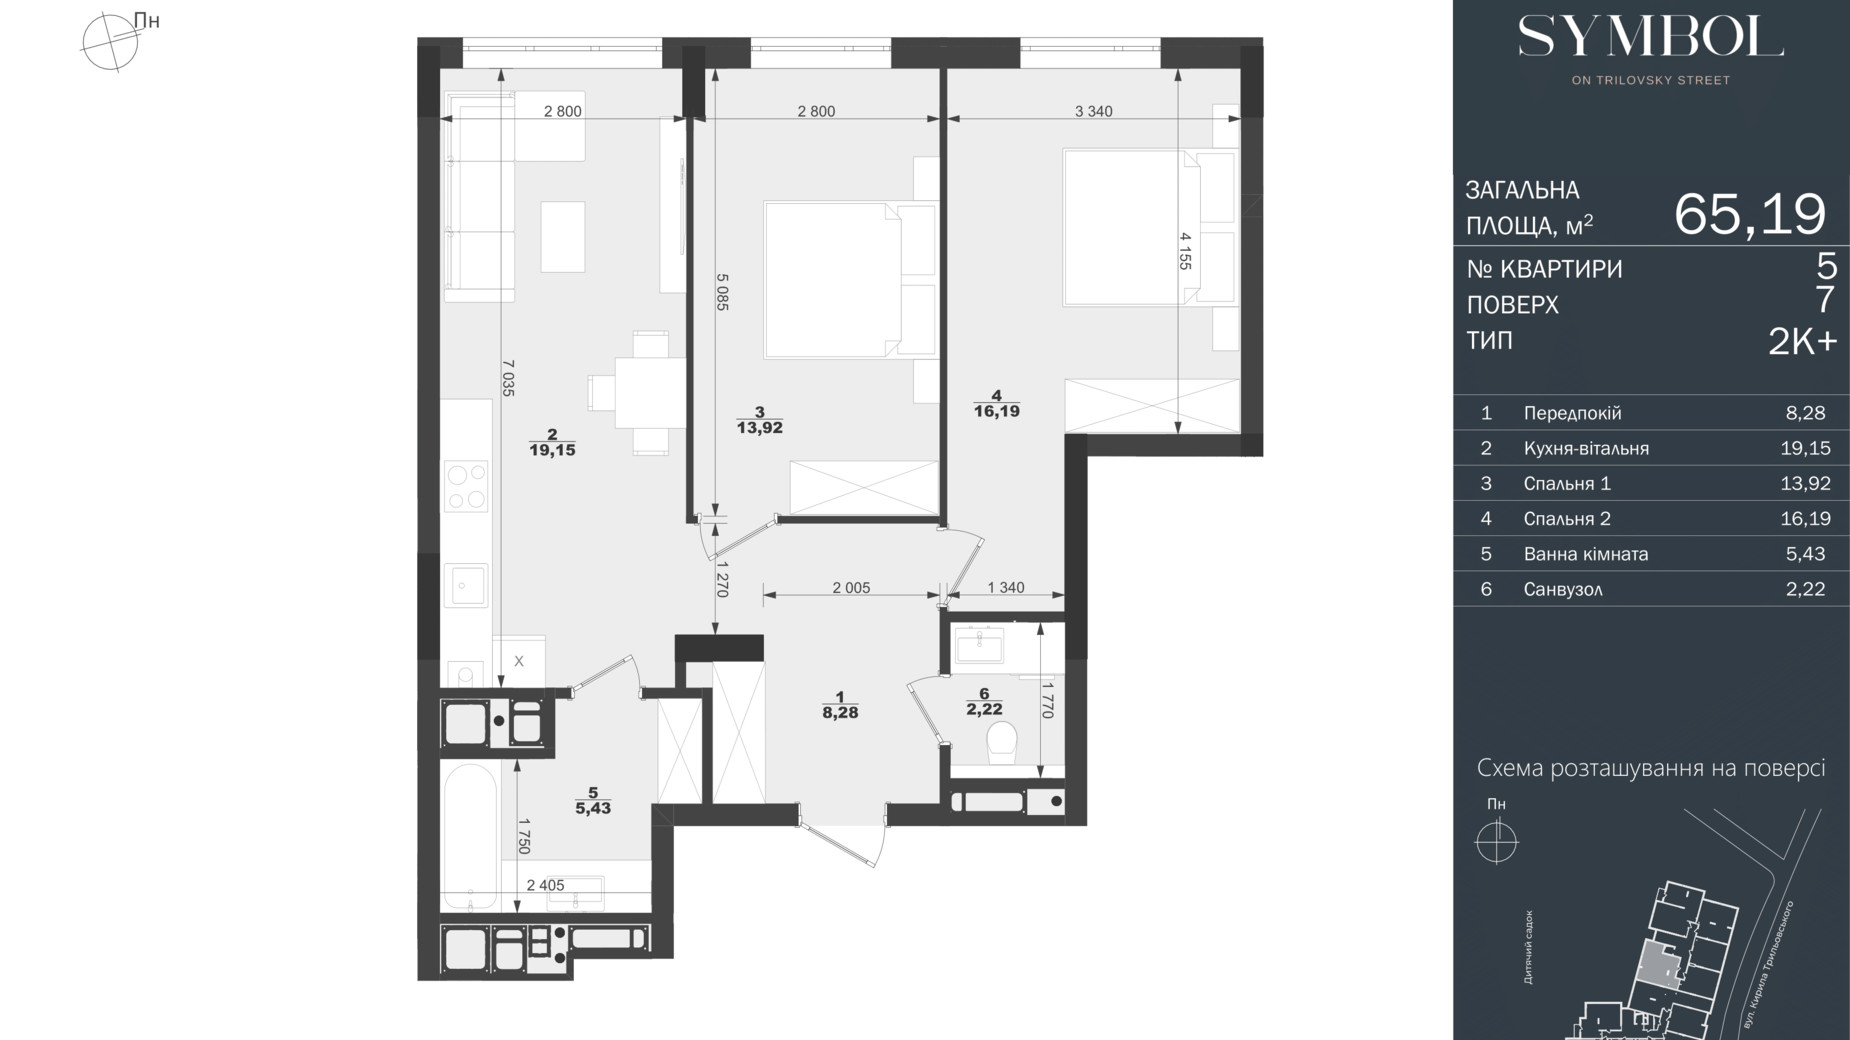 Планировка 2-комнатной квартиры в ЖК Symbol 65.19 м², фото 597859